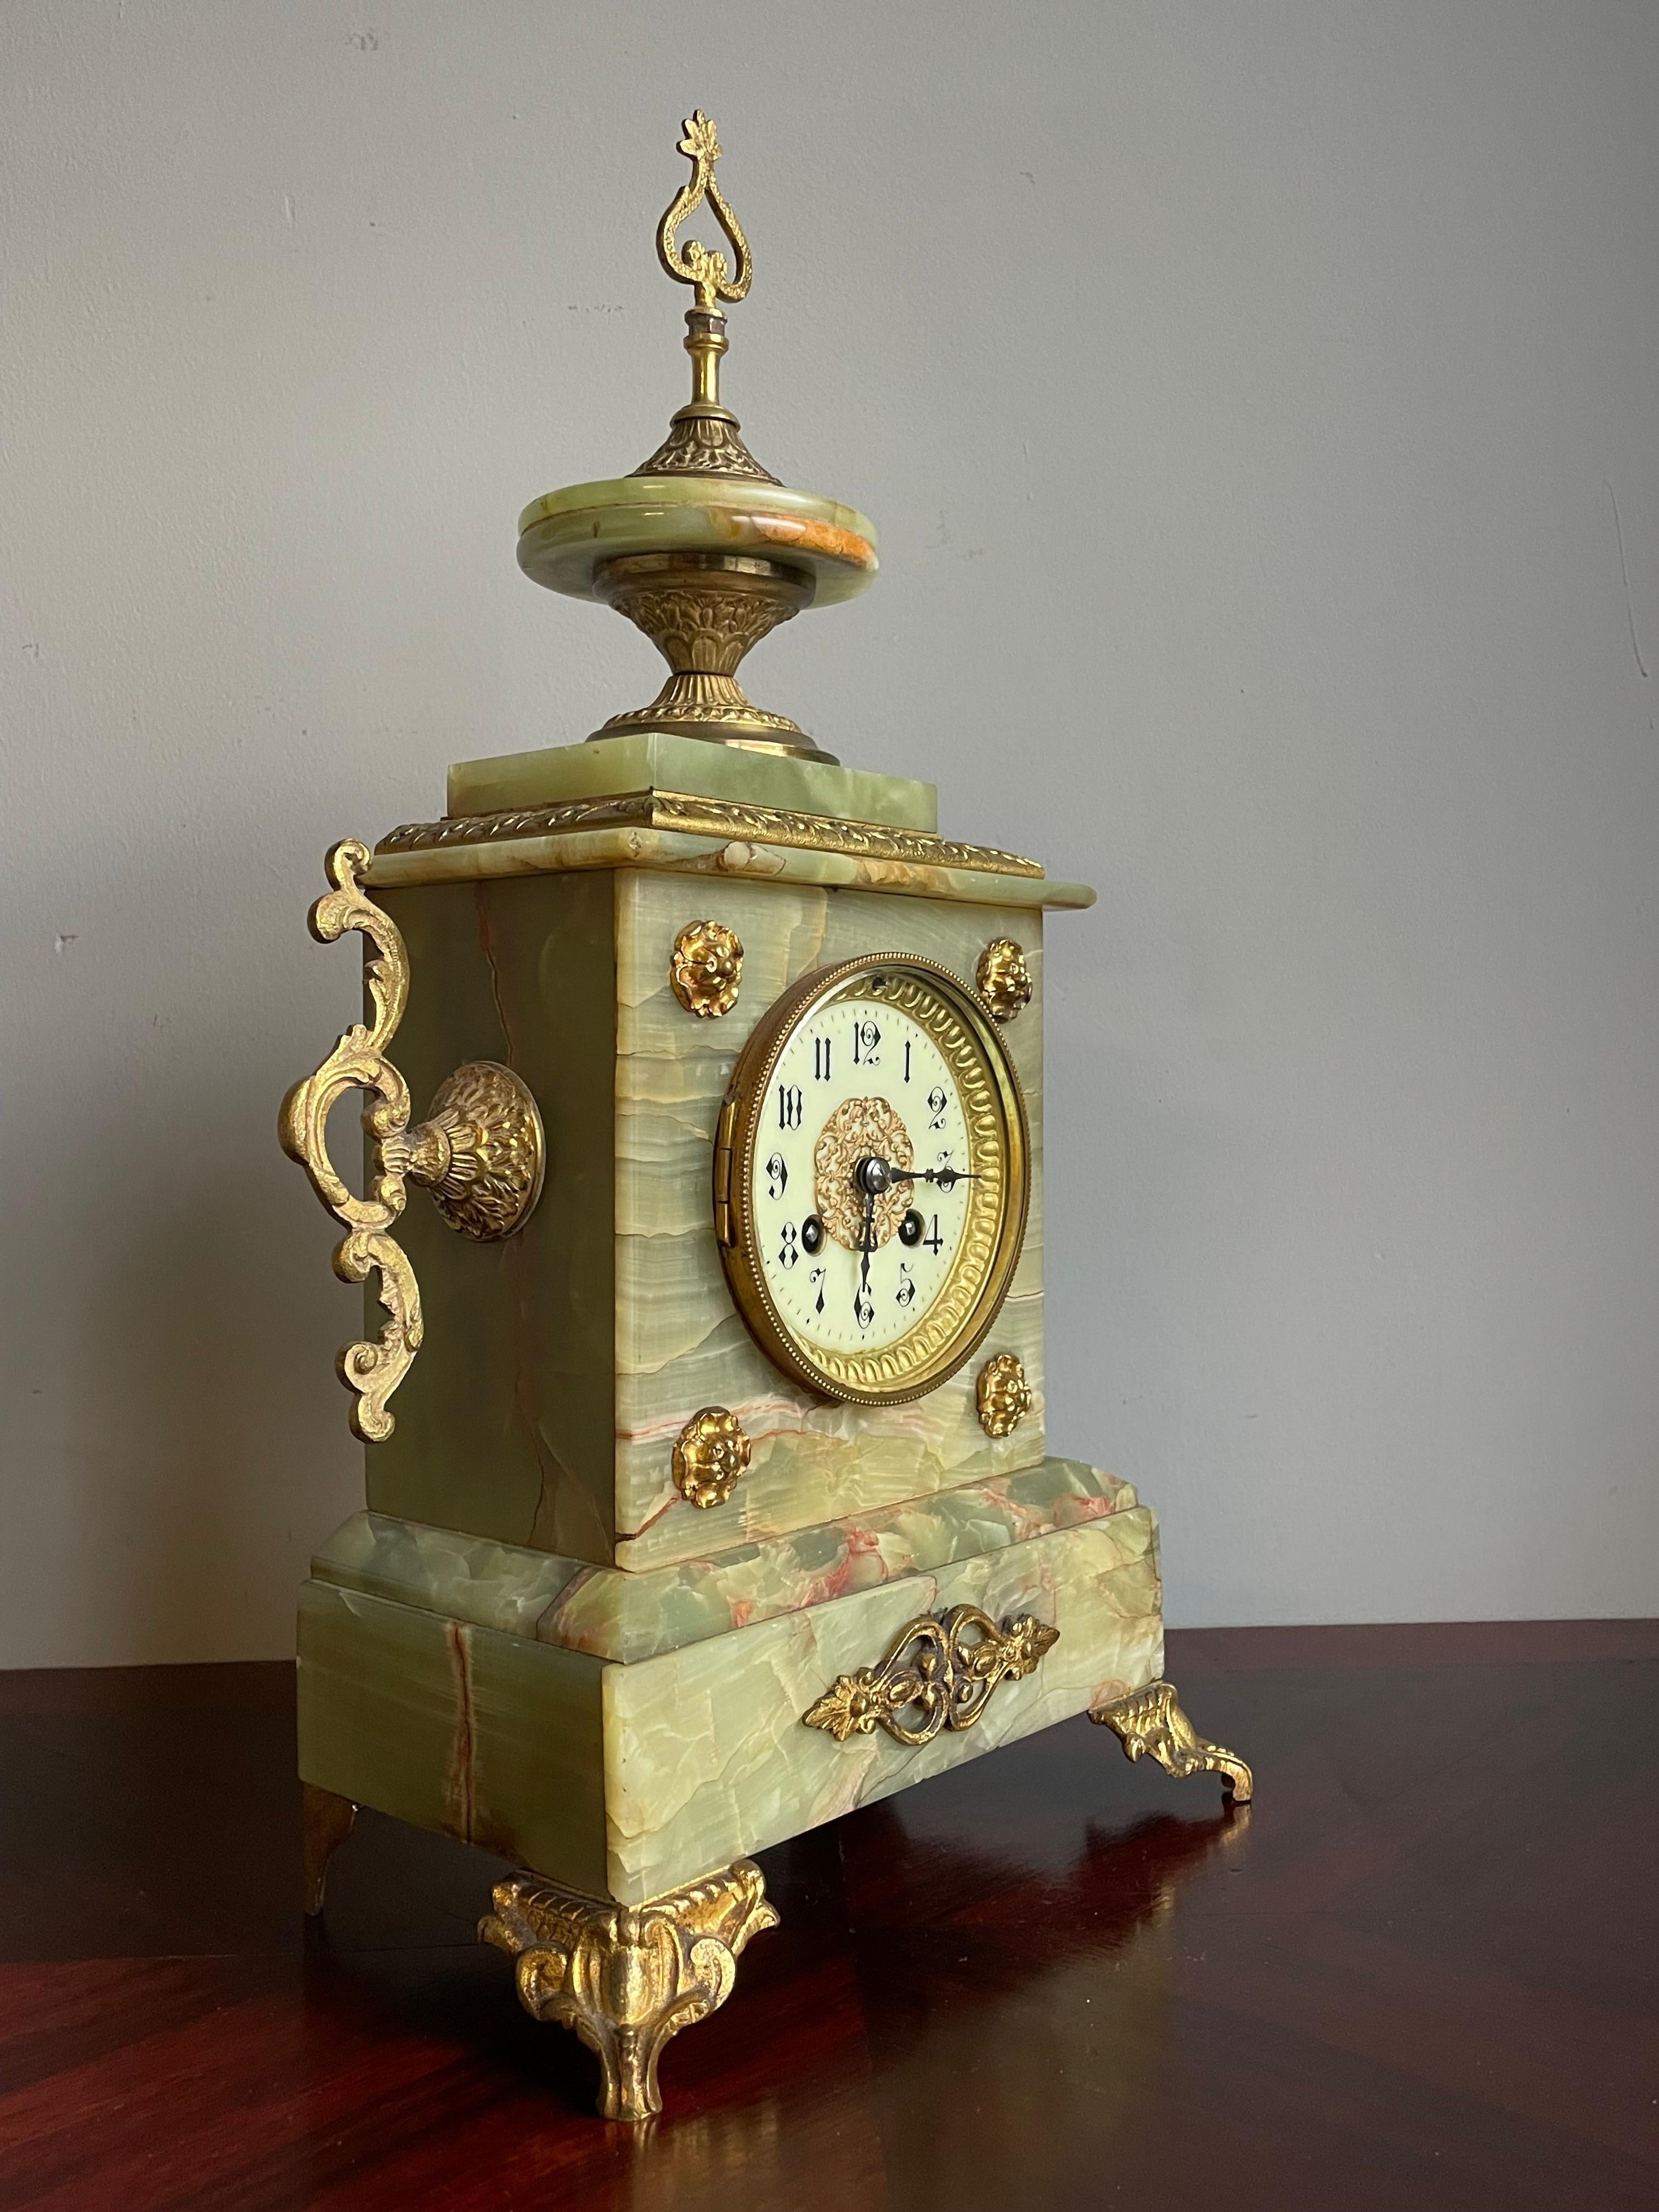 Superbes couleurs et magnifique design d'une horloge ancienne du début des années 1900.

Rien qu'en regardant le design époustouflant, les nombreux matériaux de qualité et les détails étonnants, on comprend que cette remarquable horloge ancienne n'a